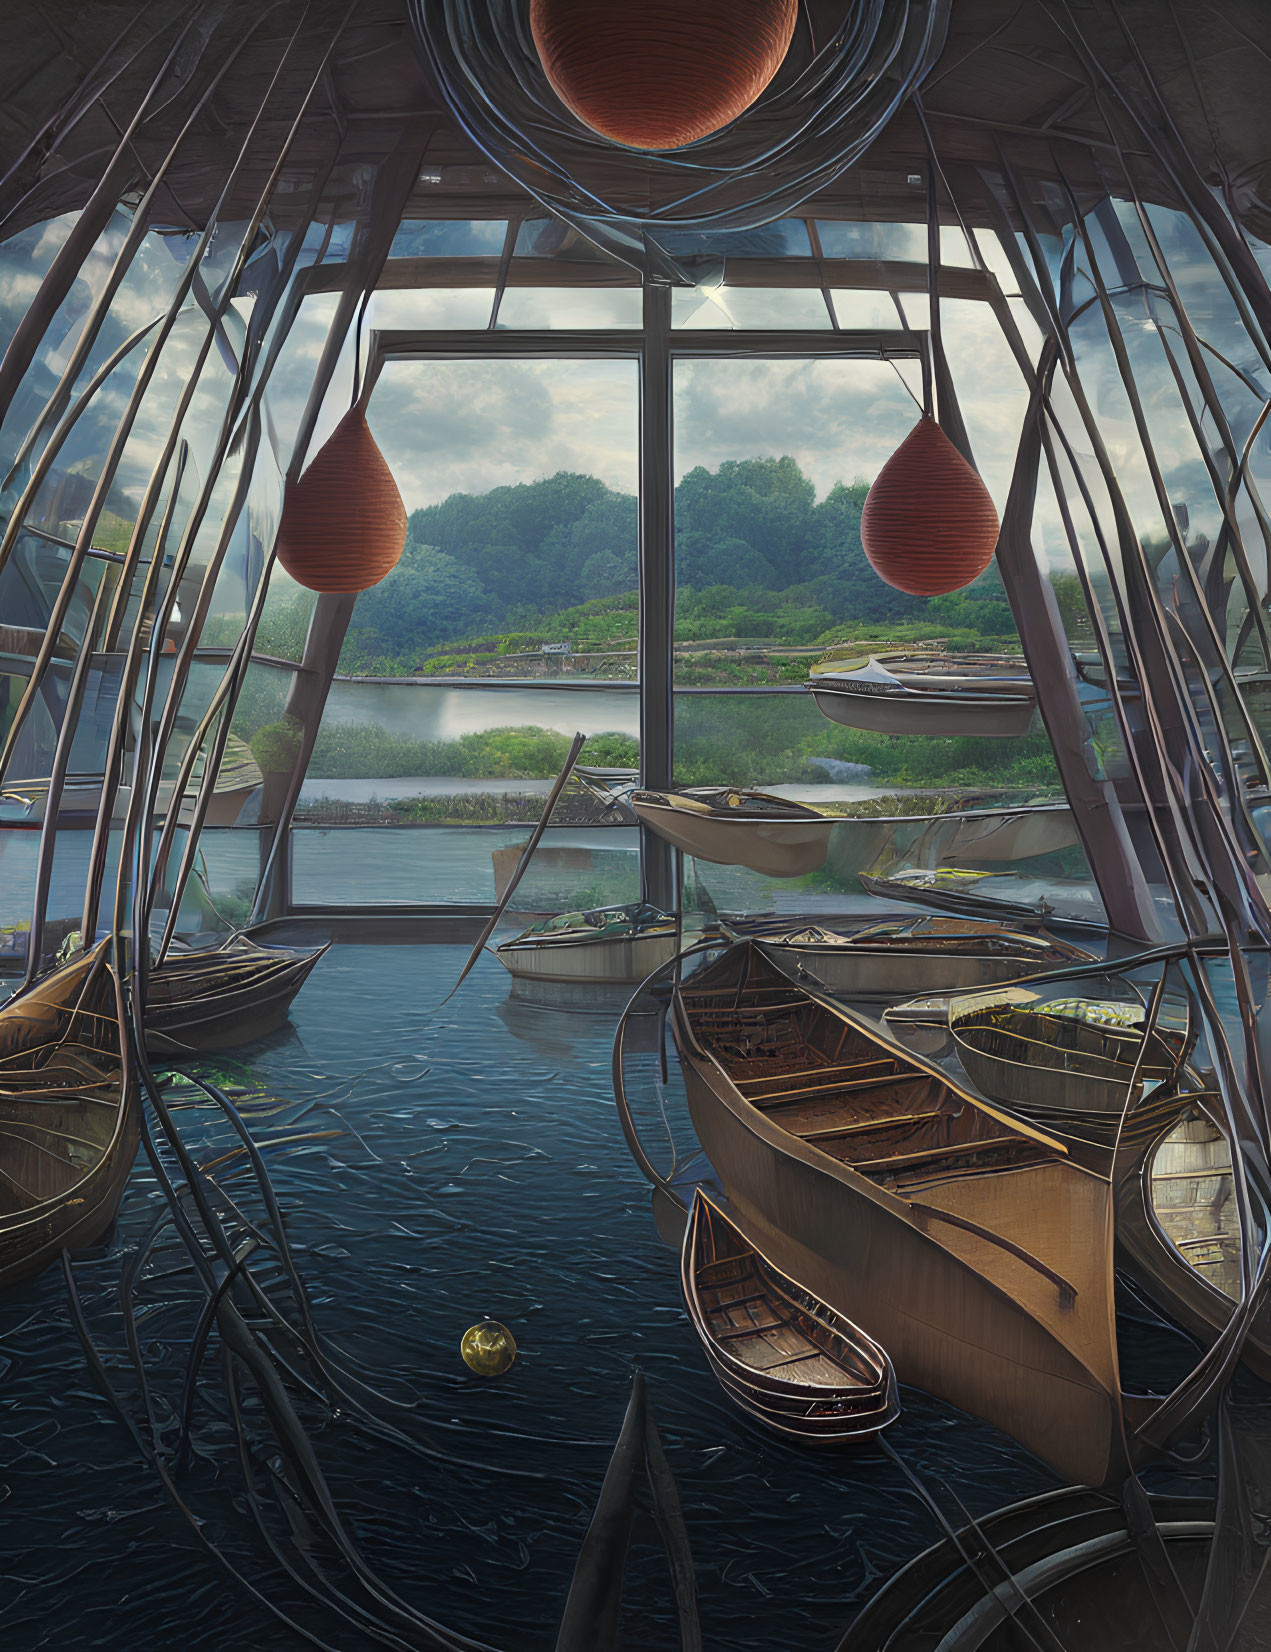 Tranquil Indoor Boat Showroom Overlooking Serene Lake